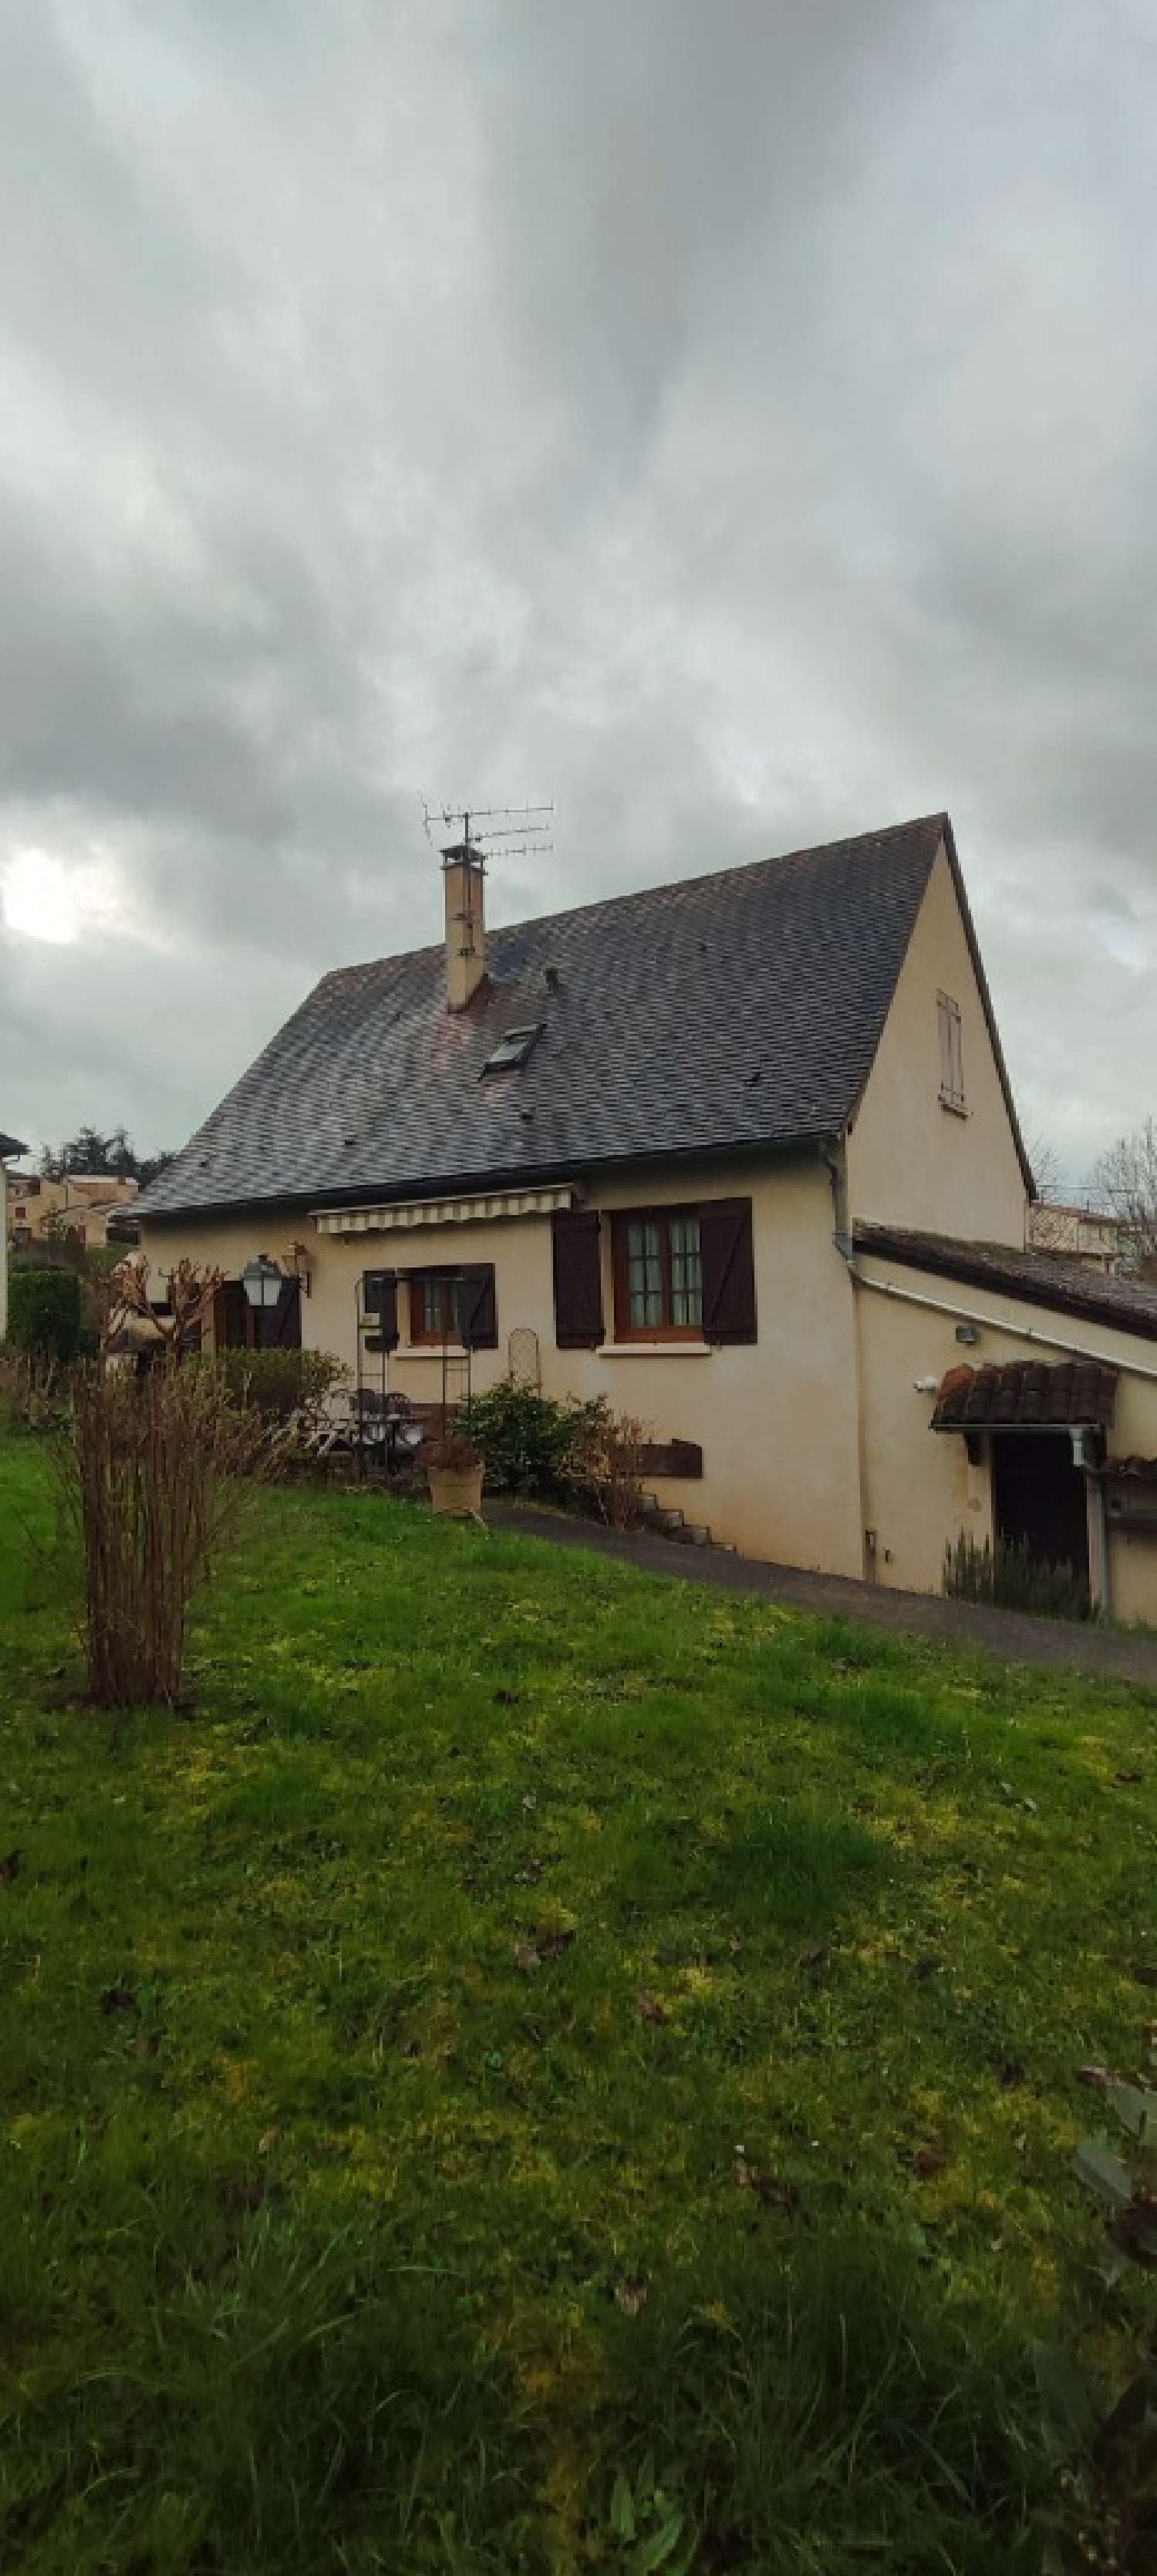  à vendre maison Beaumont-du-Périgord Dordogne 2